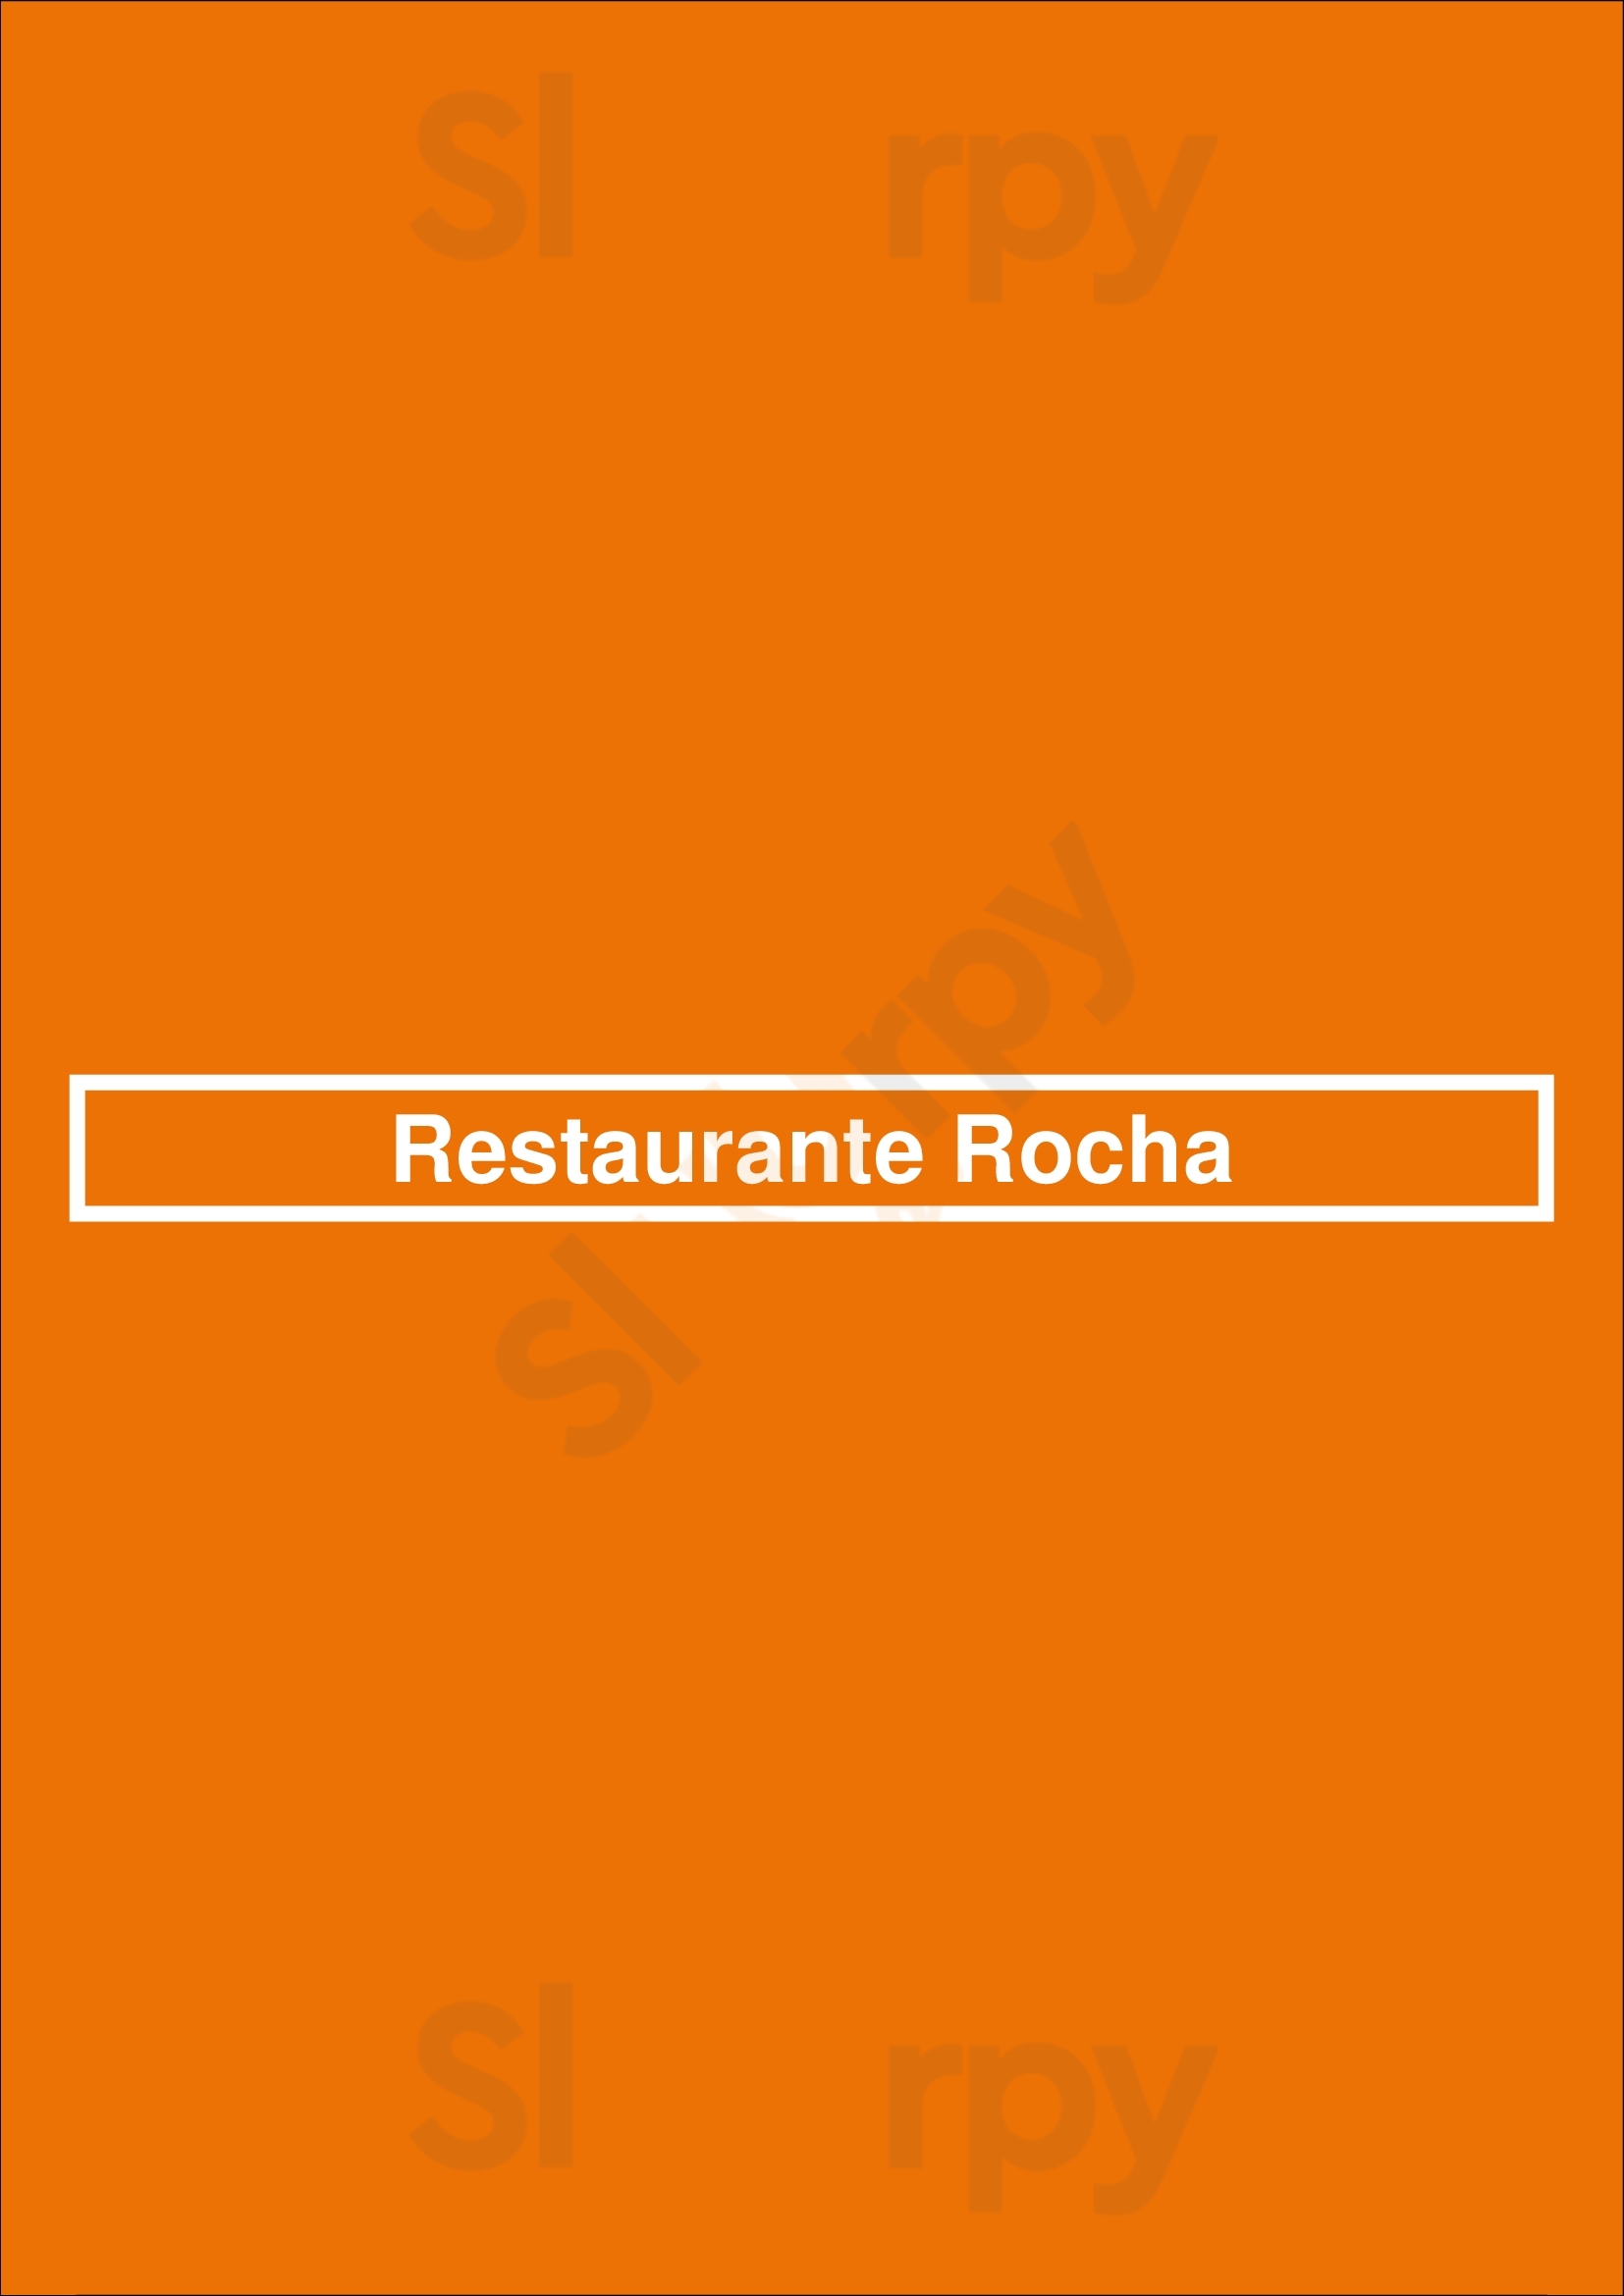 Restaurante Rocha Peniche Menu - 1